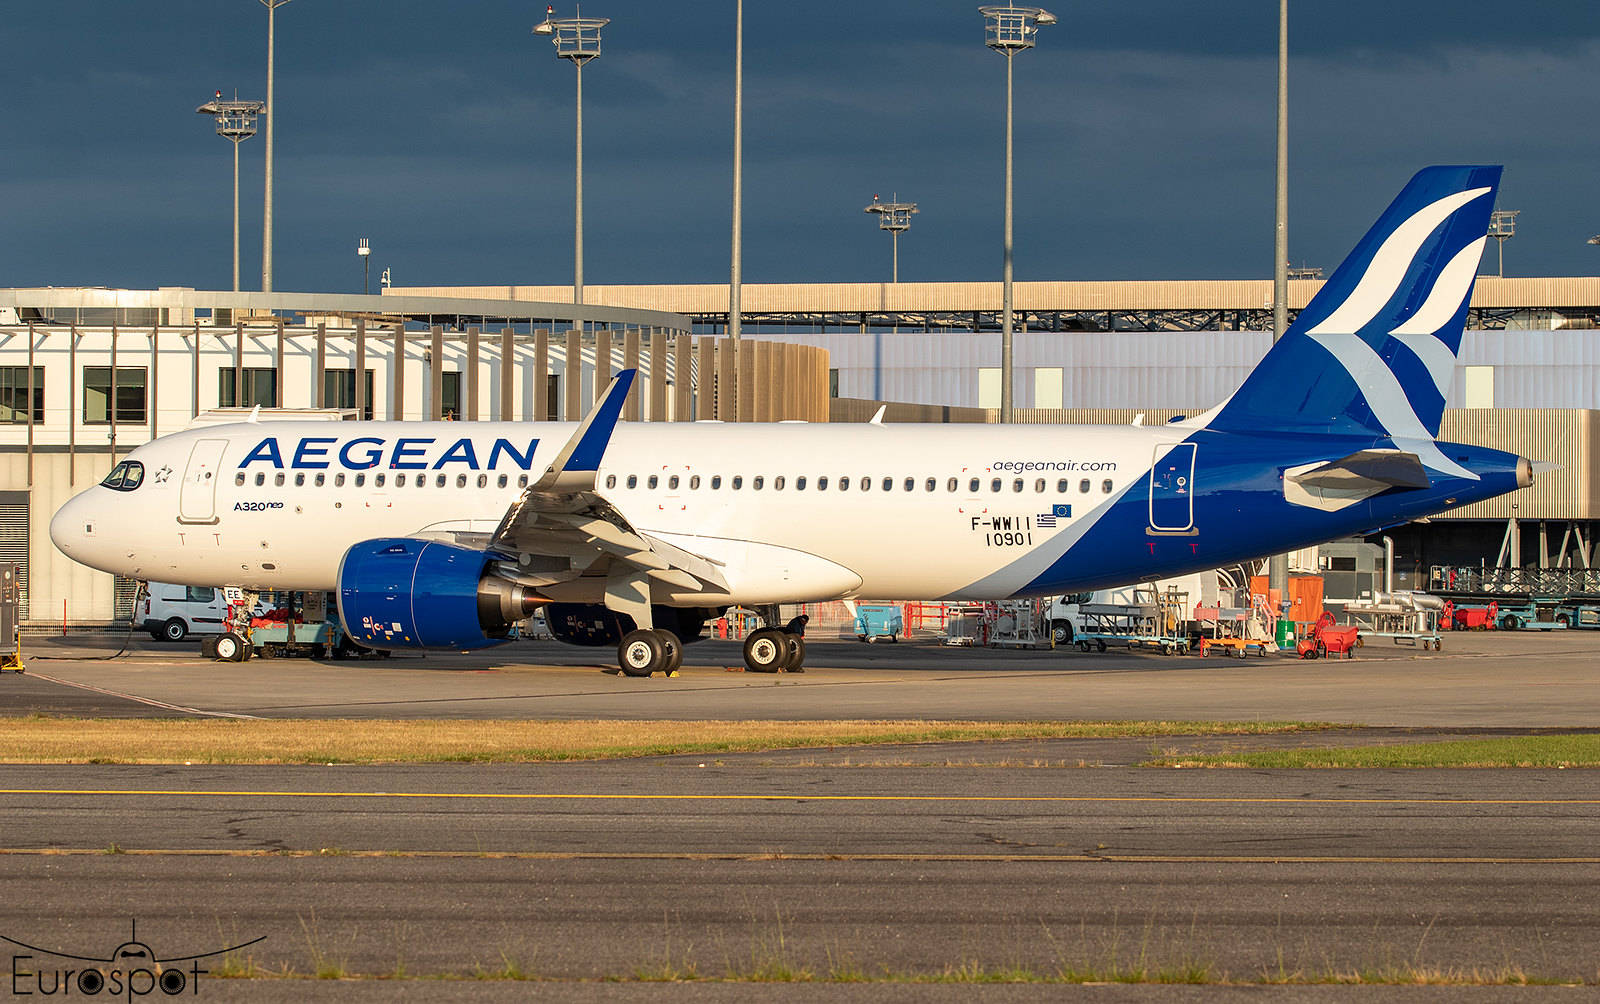 Airbus A320-271N flyselskab Aegean Airlines på lufthavn Wallpaper